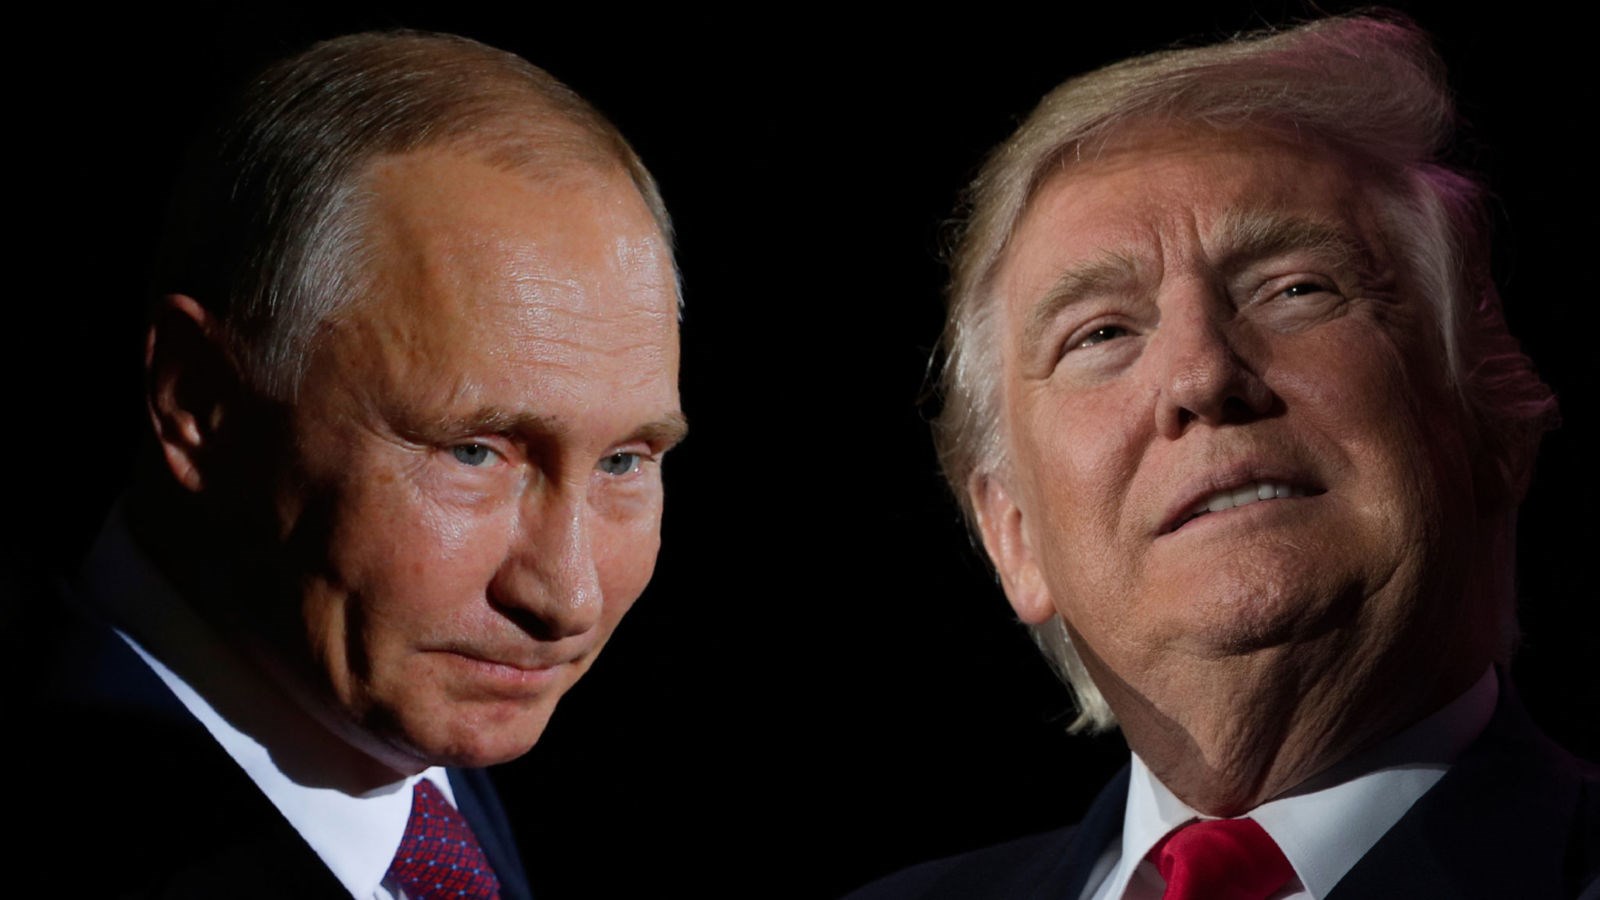 Πούτιν: “Δεν αναμείχθηκα στις αμερικανικές εκλογές” – Τραμπ: “Σε πιστεύω”